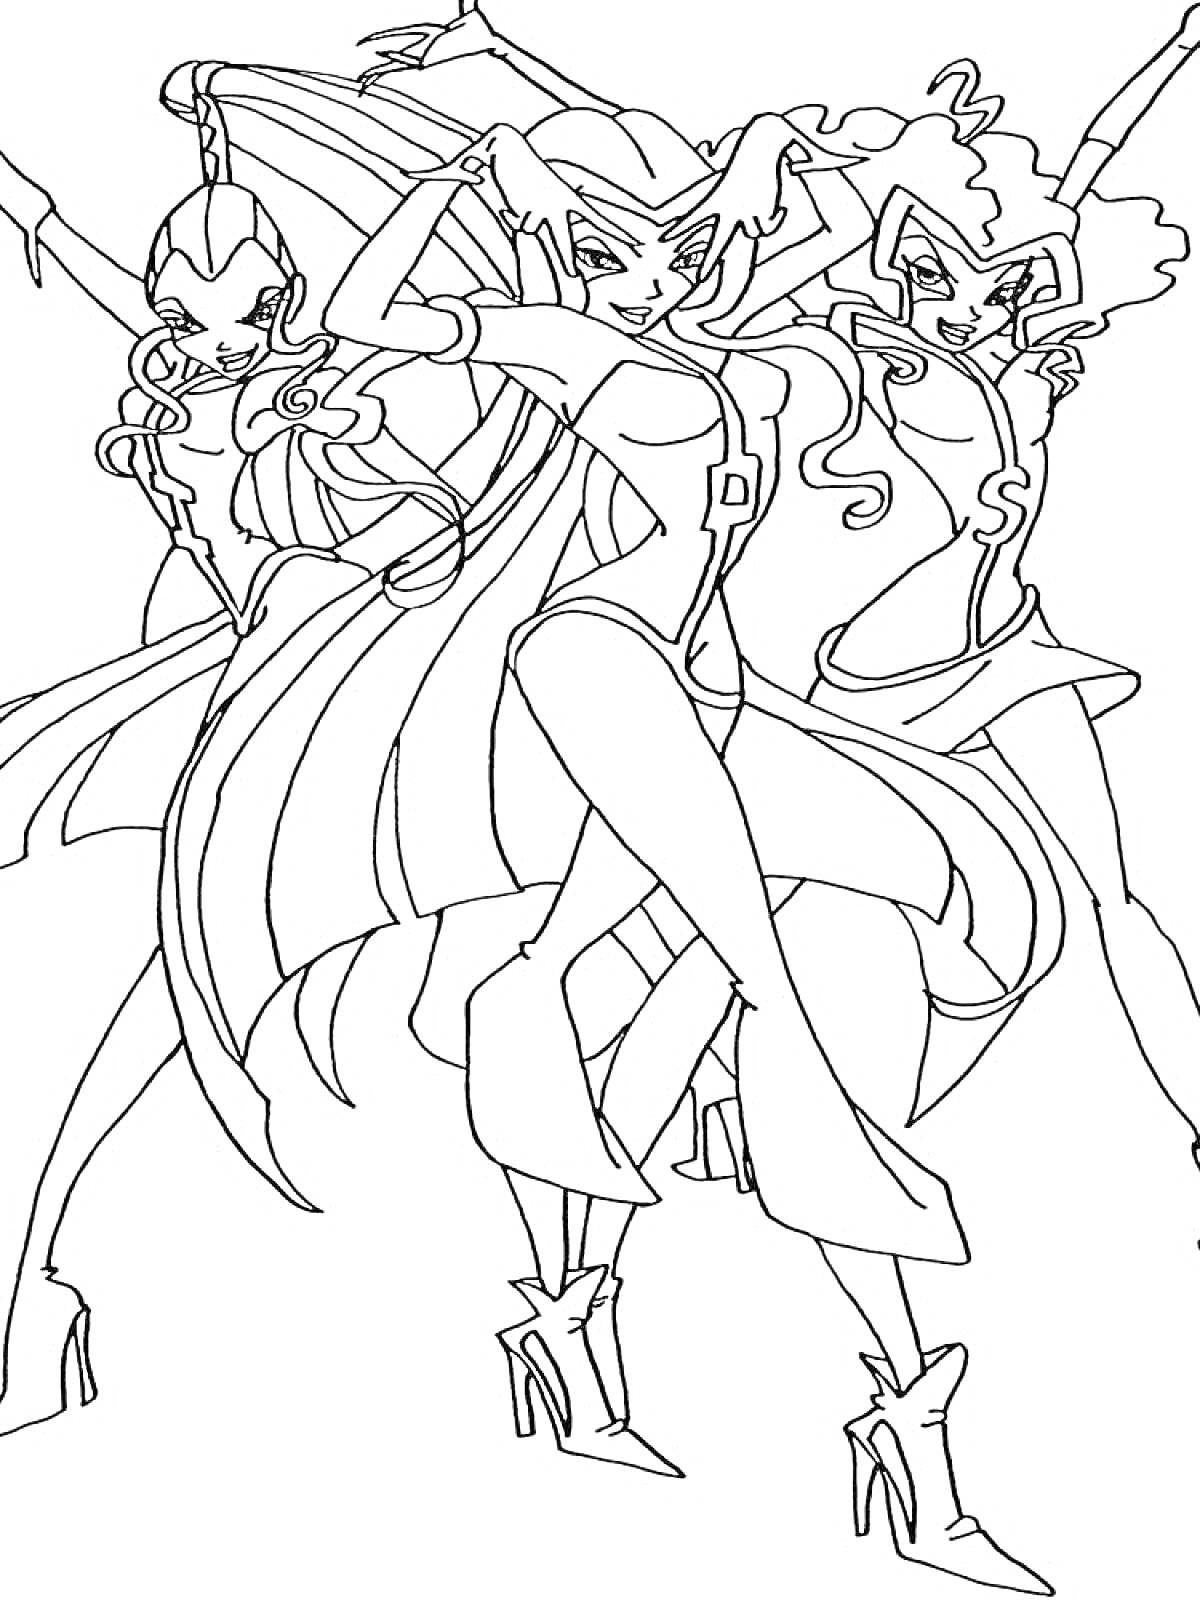 Раскраска Трикс из мультсериала Винкс, три ведьмы, в полный рост